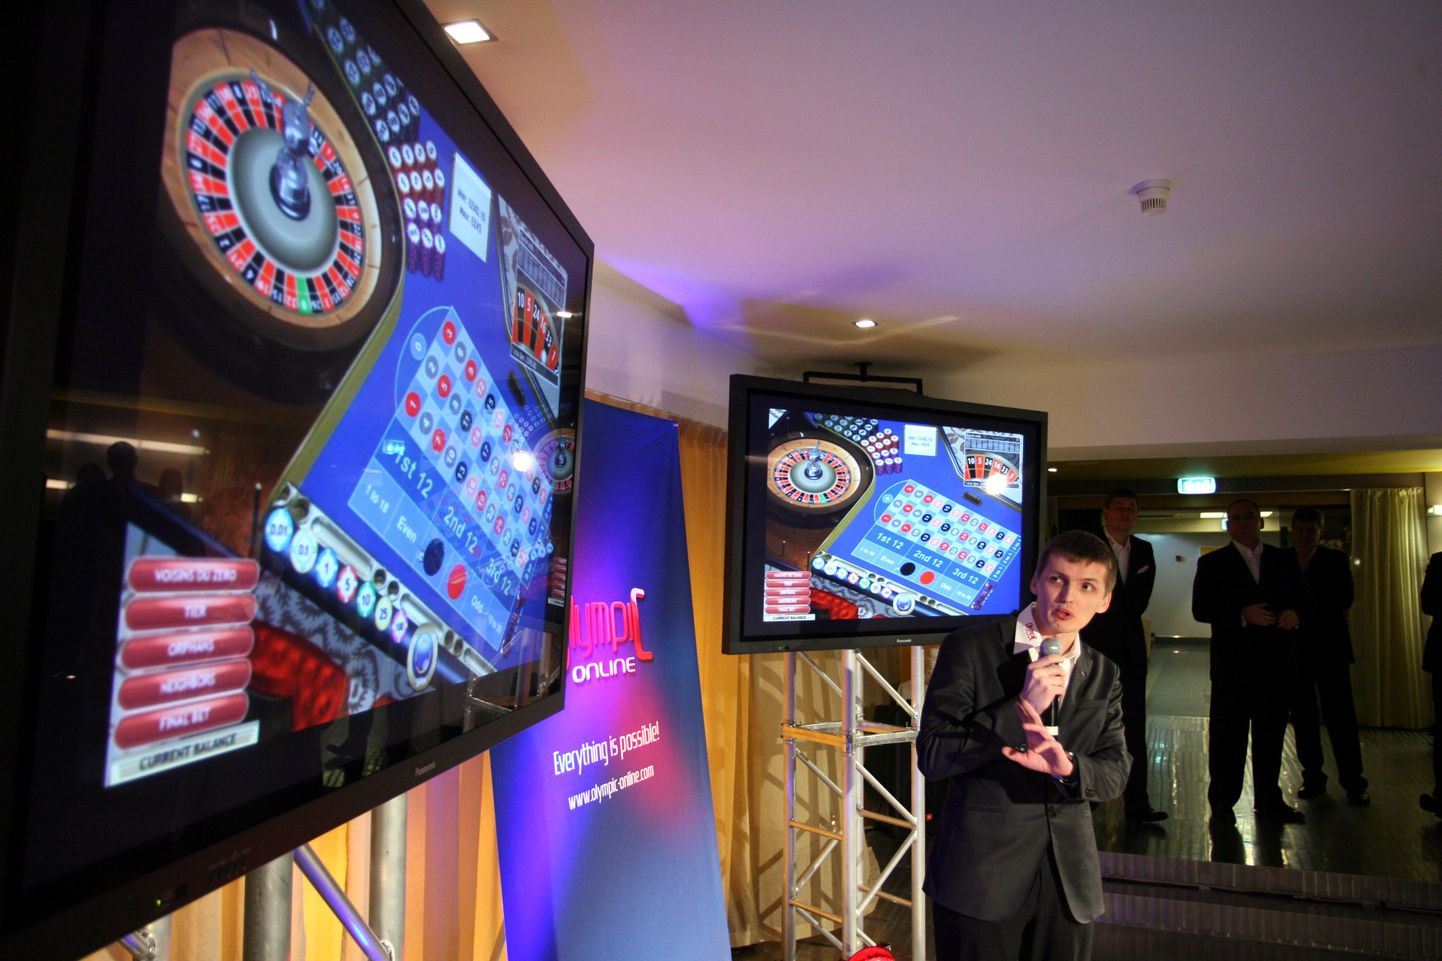 Esimesena sai Eestis kaughasartmängude korraldamise loa Olympic Casino.